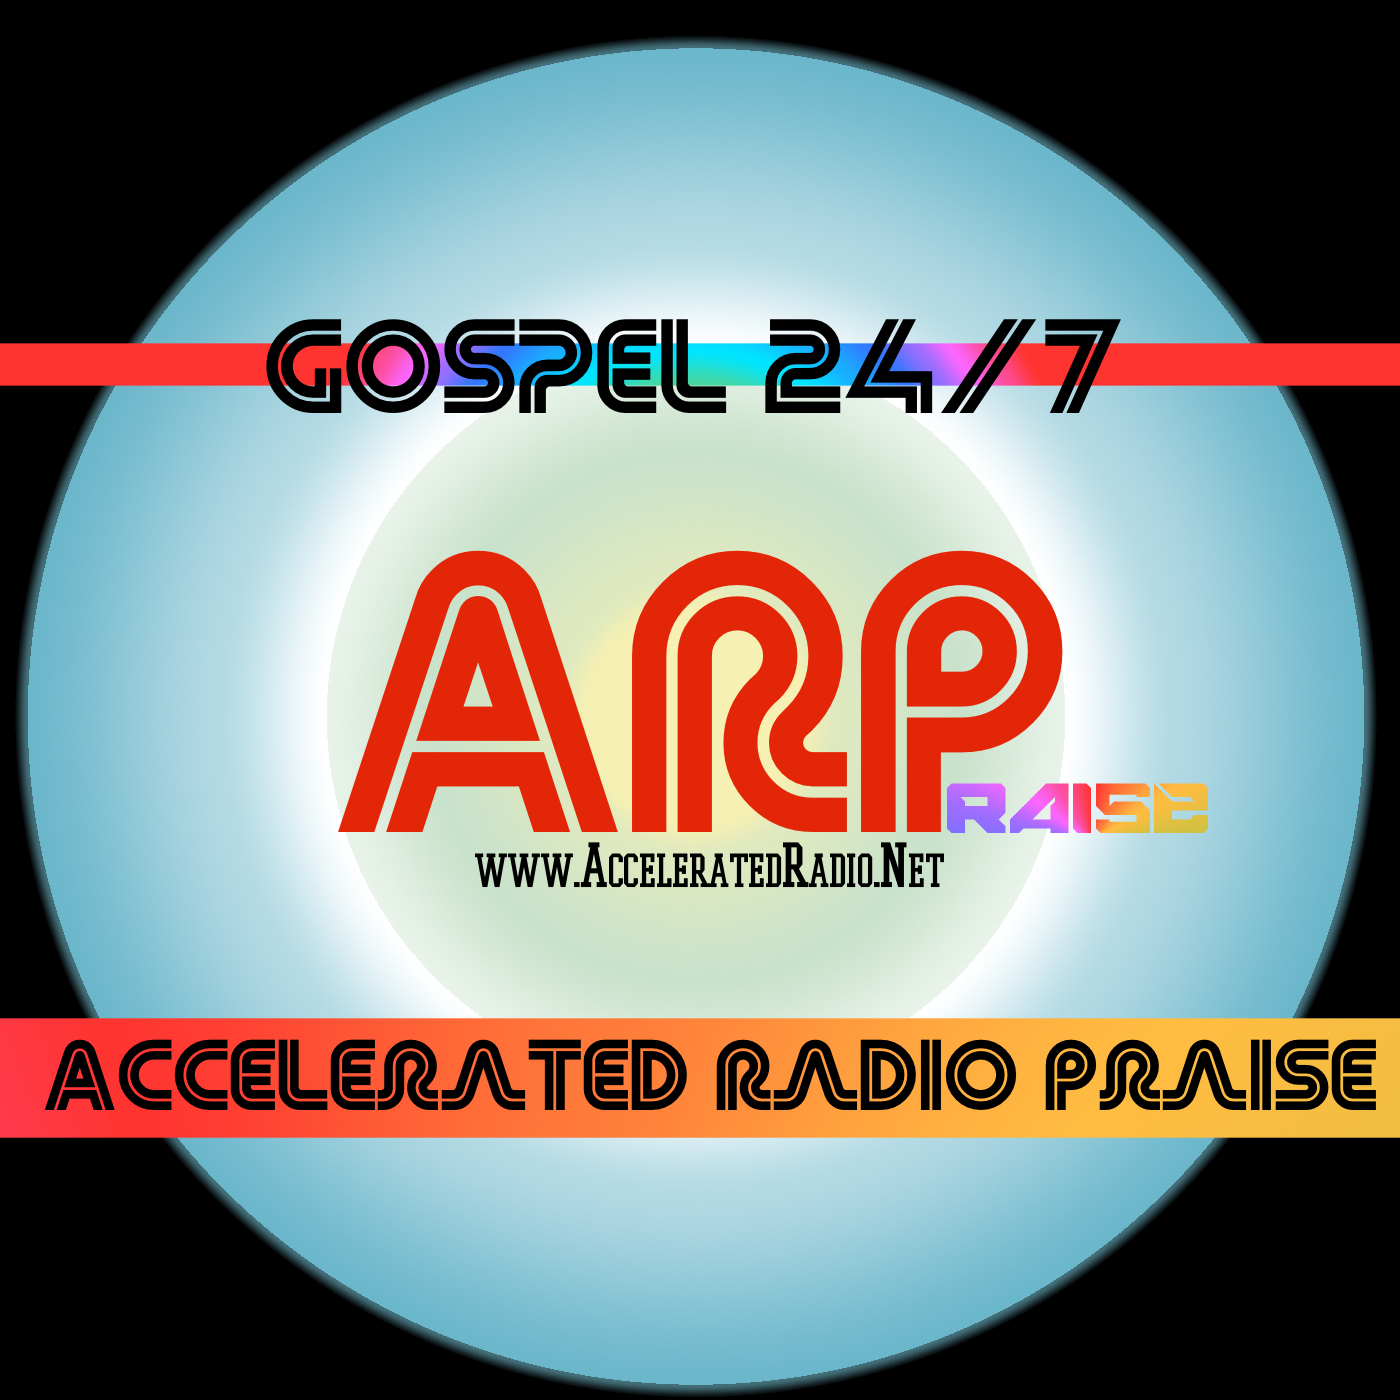 Accelerated Radio Praise